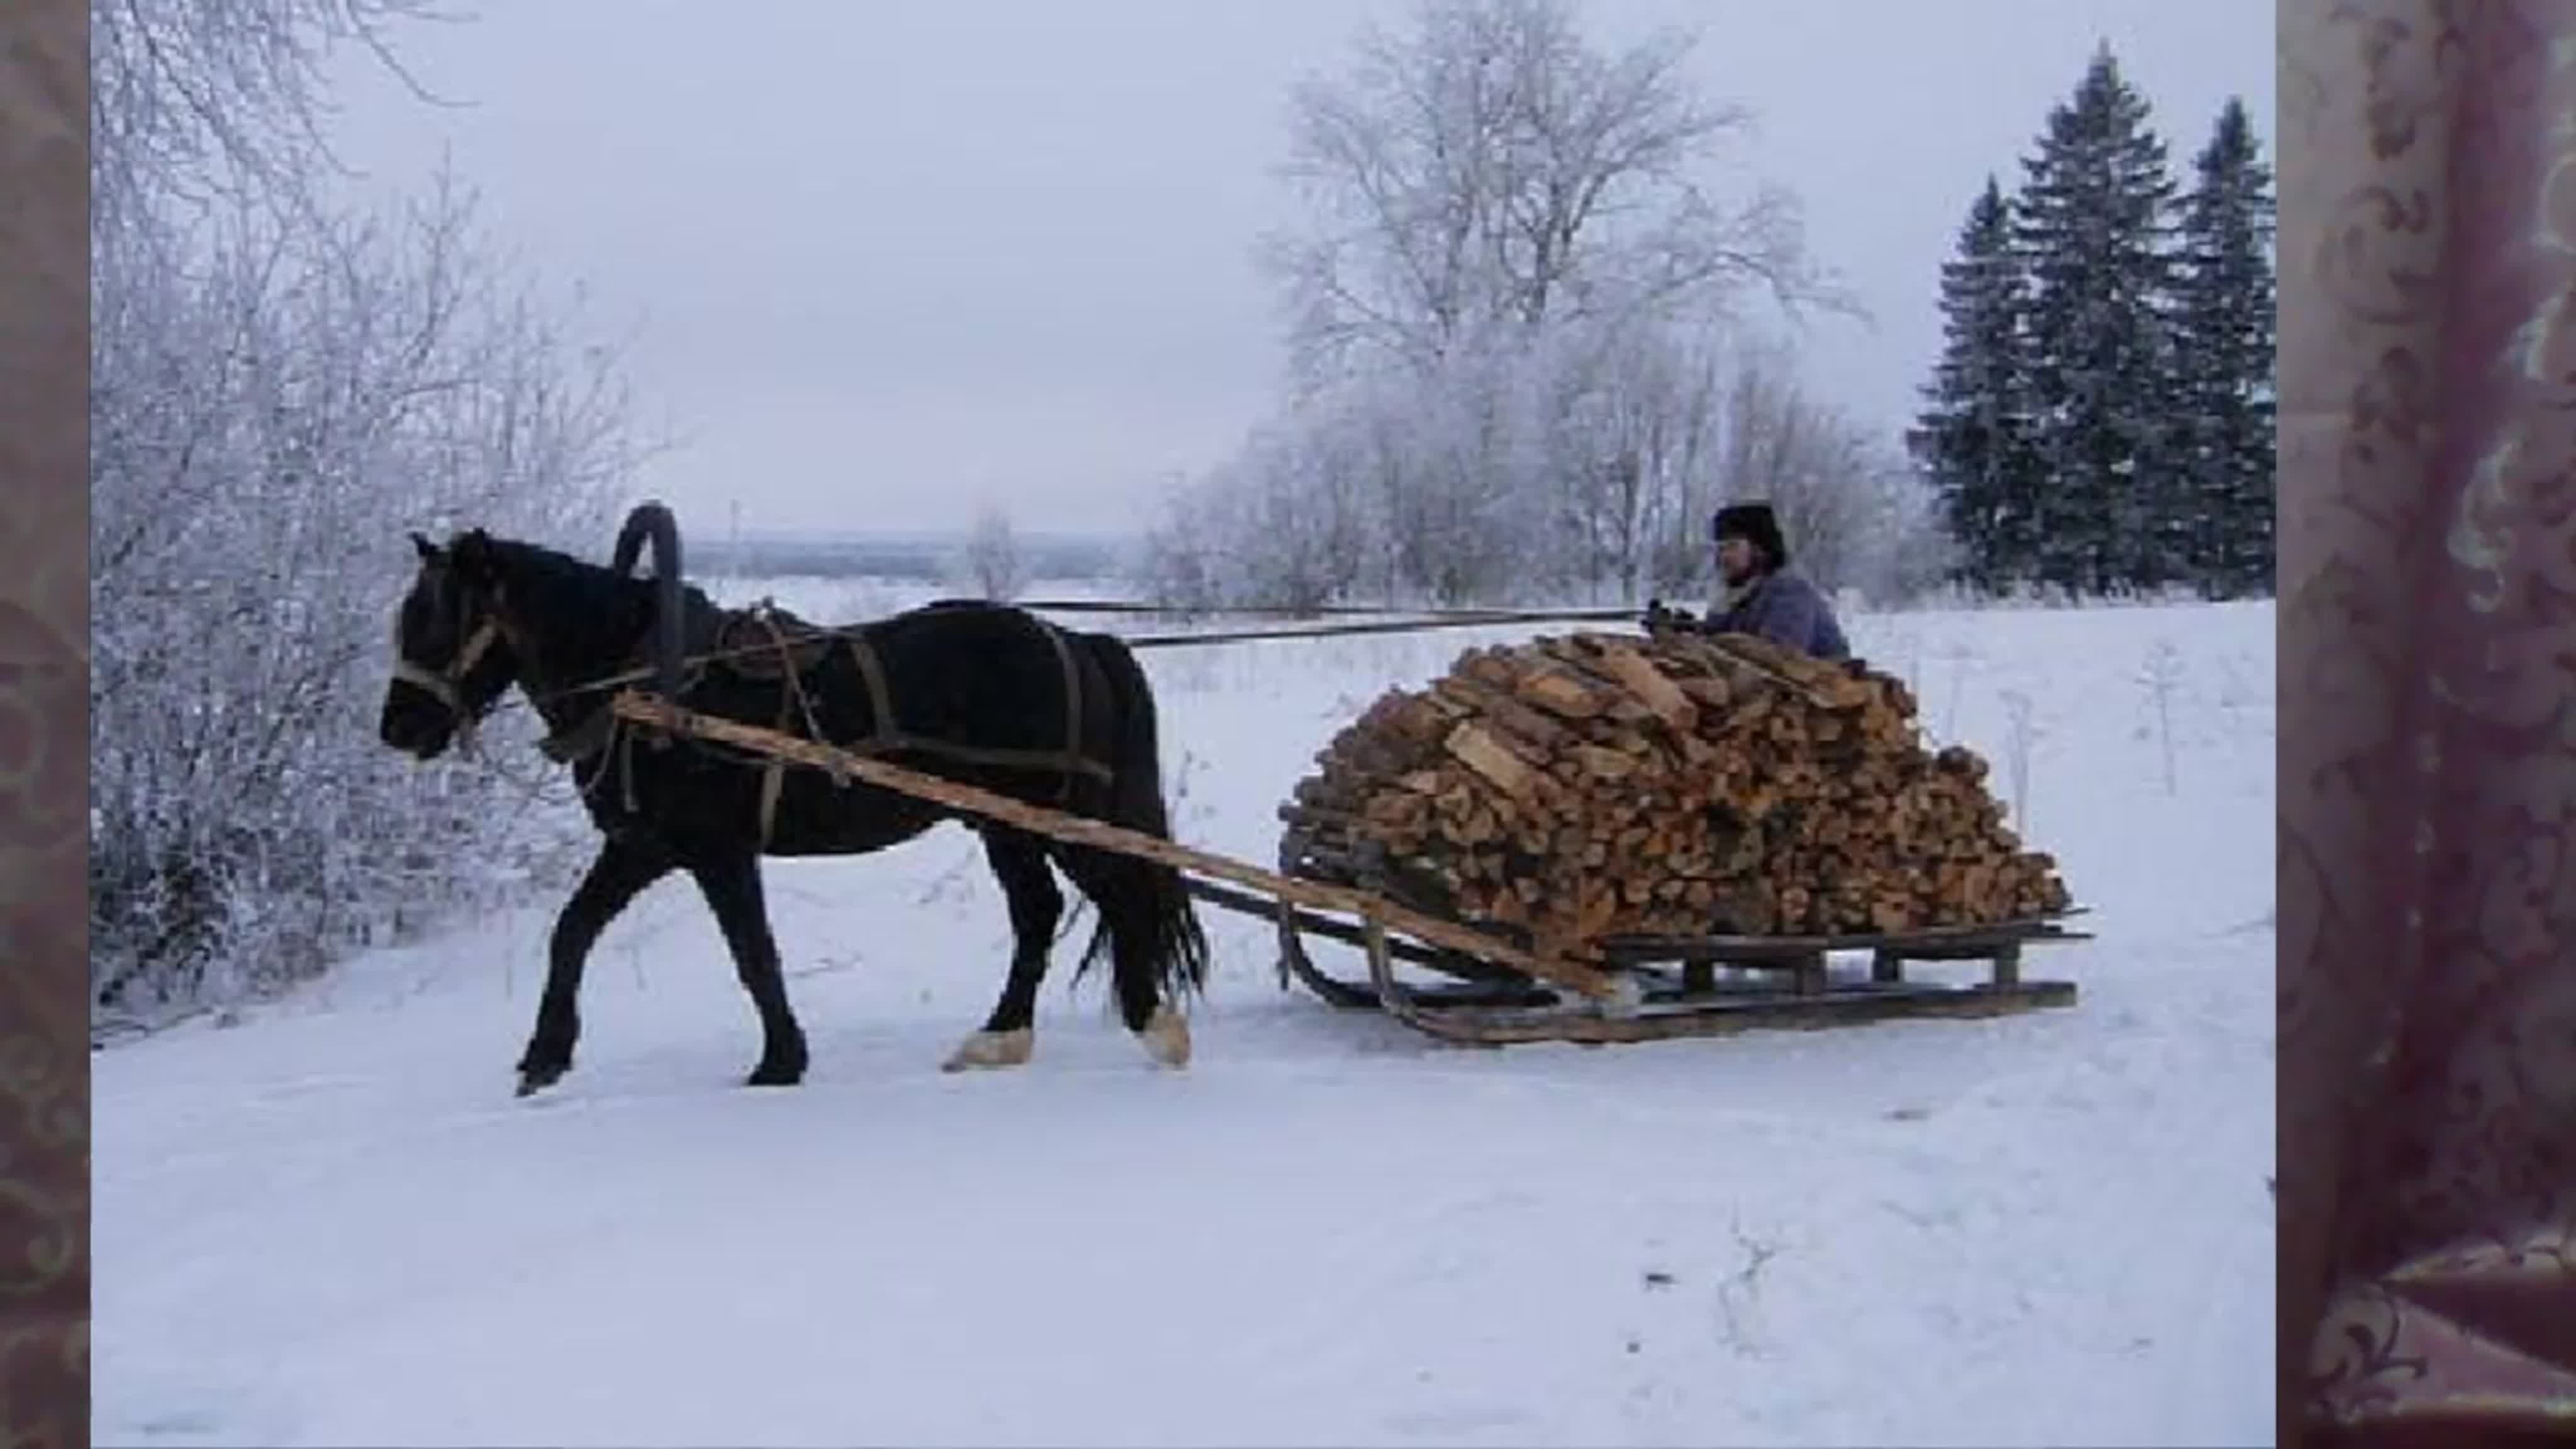 Невдалеке стояла телега запряженная. Телега дров. Сани для дров. Воз дров. Лошади зимой.